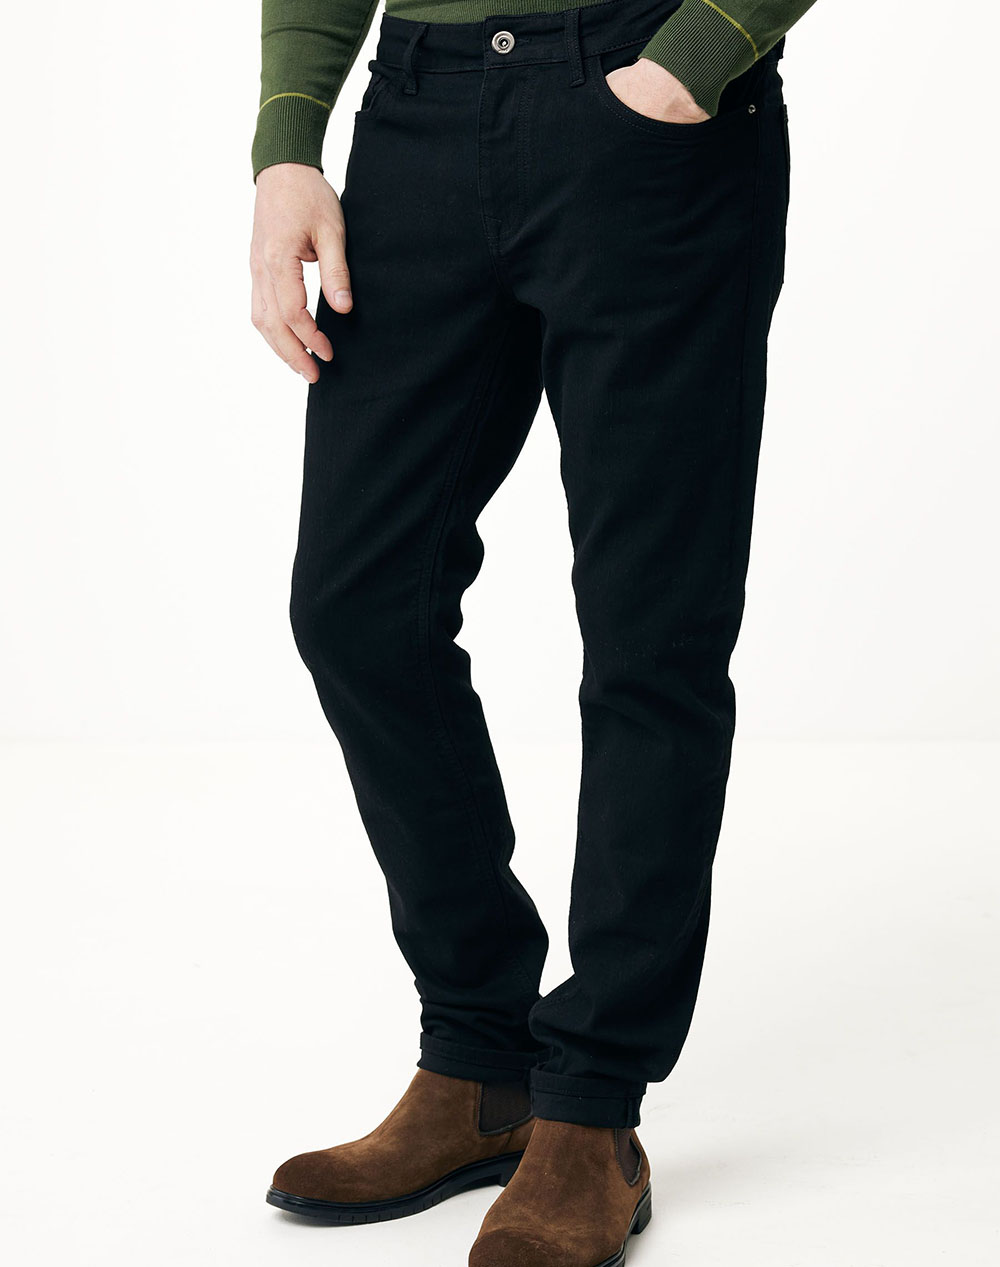 MEXX MEXX JIM Mid waist/ Tapered leg jeans BM0519036M-50054 Black